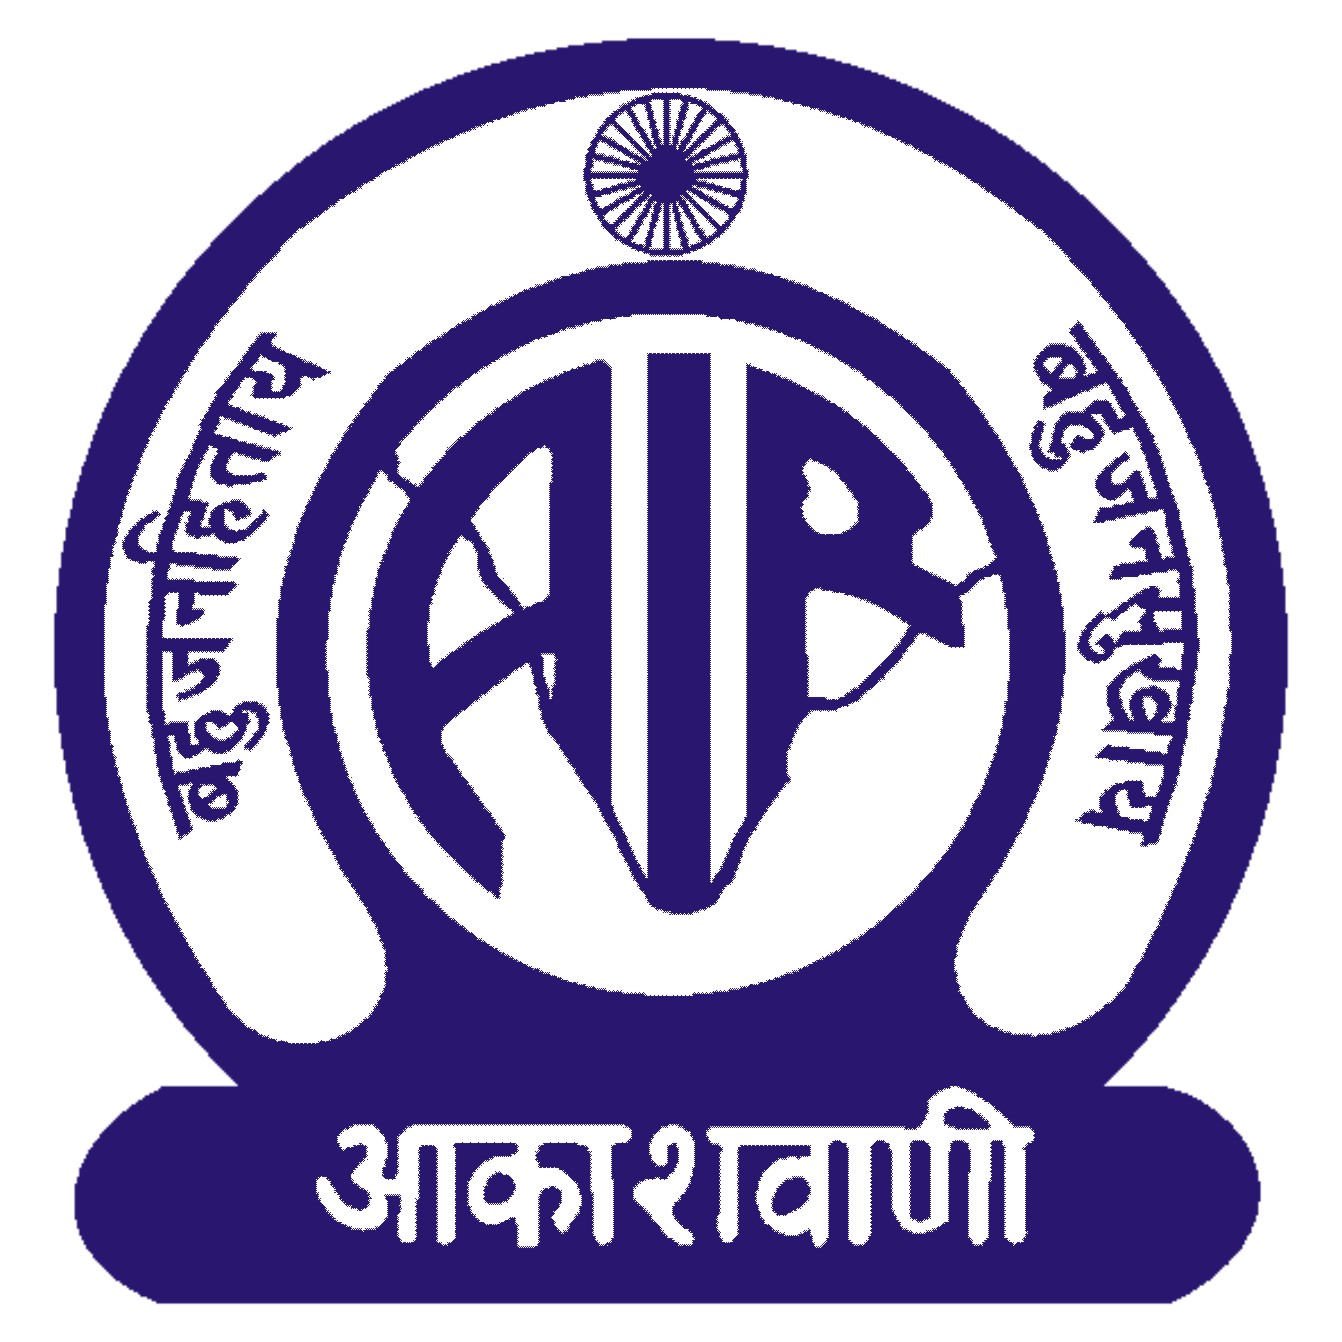 http://1.bp.blogspot.com/-lNHJ2rcqz9U/TuN940CITQI/AAAAAAAADpA/XhaAbi2EFh4/s1600/all-india-radio-logo.jpg